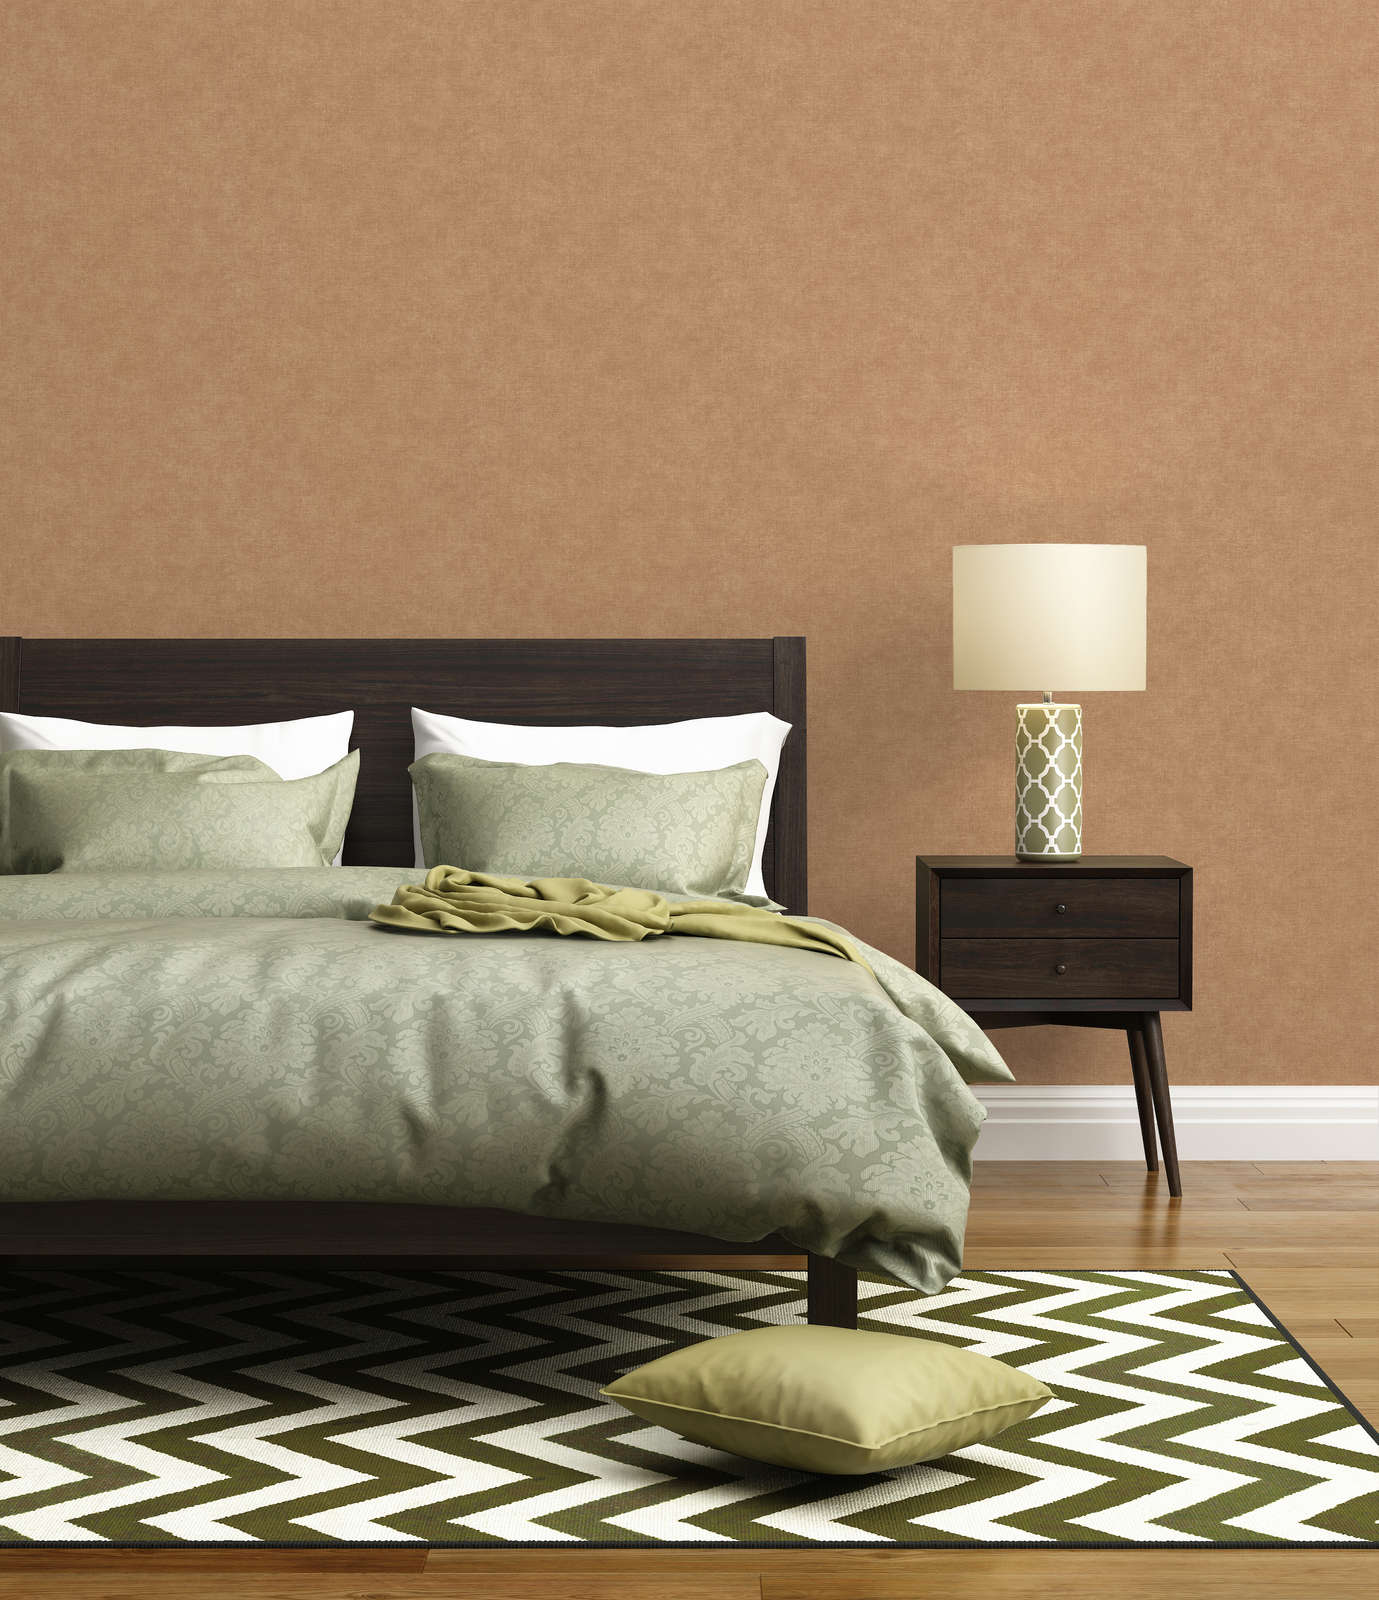             Eenheidsbehang met lichte textuur in textiellook - bruin, beige
        